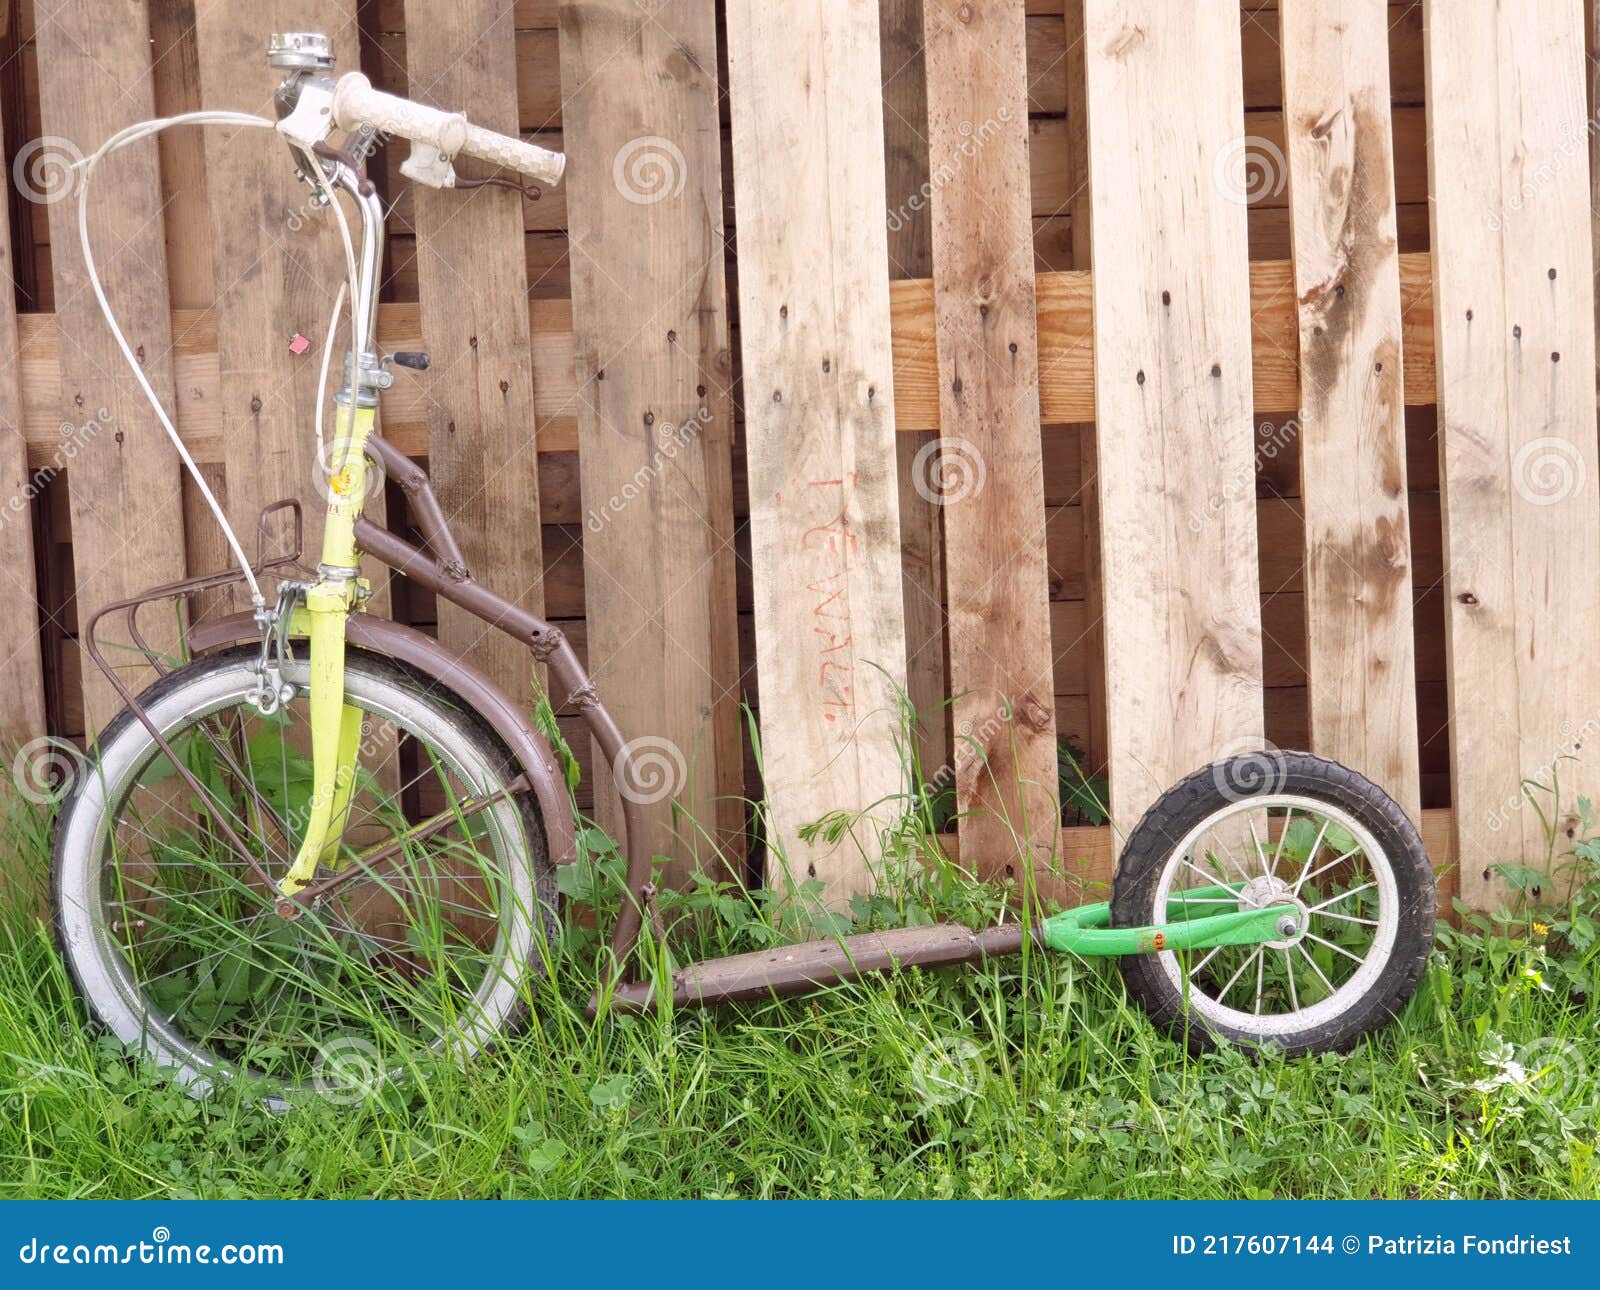 В Брянске сняли на фото необычный самодельный велосипед